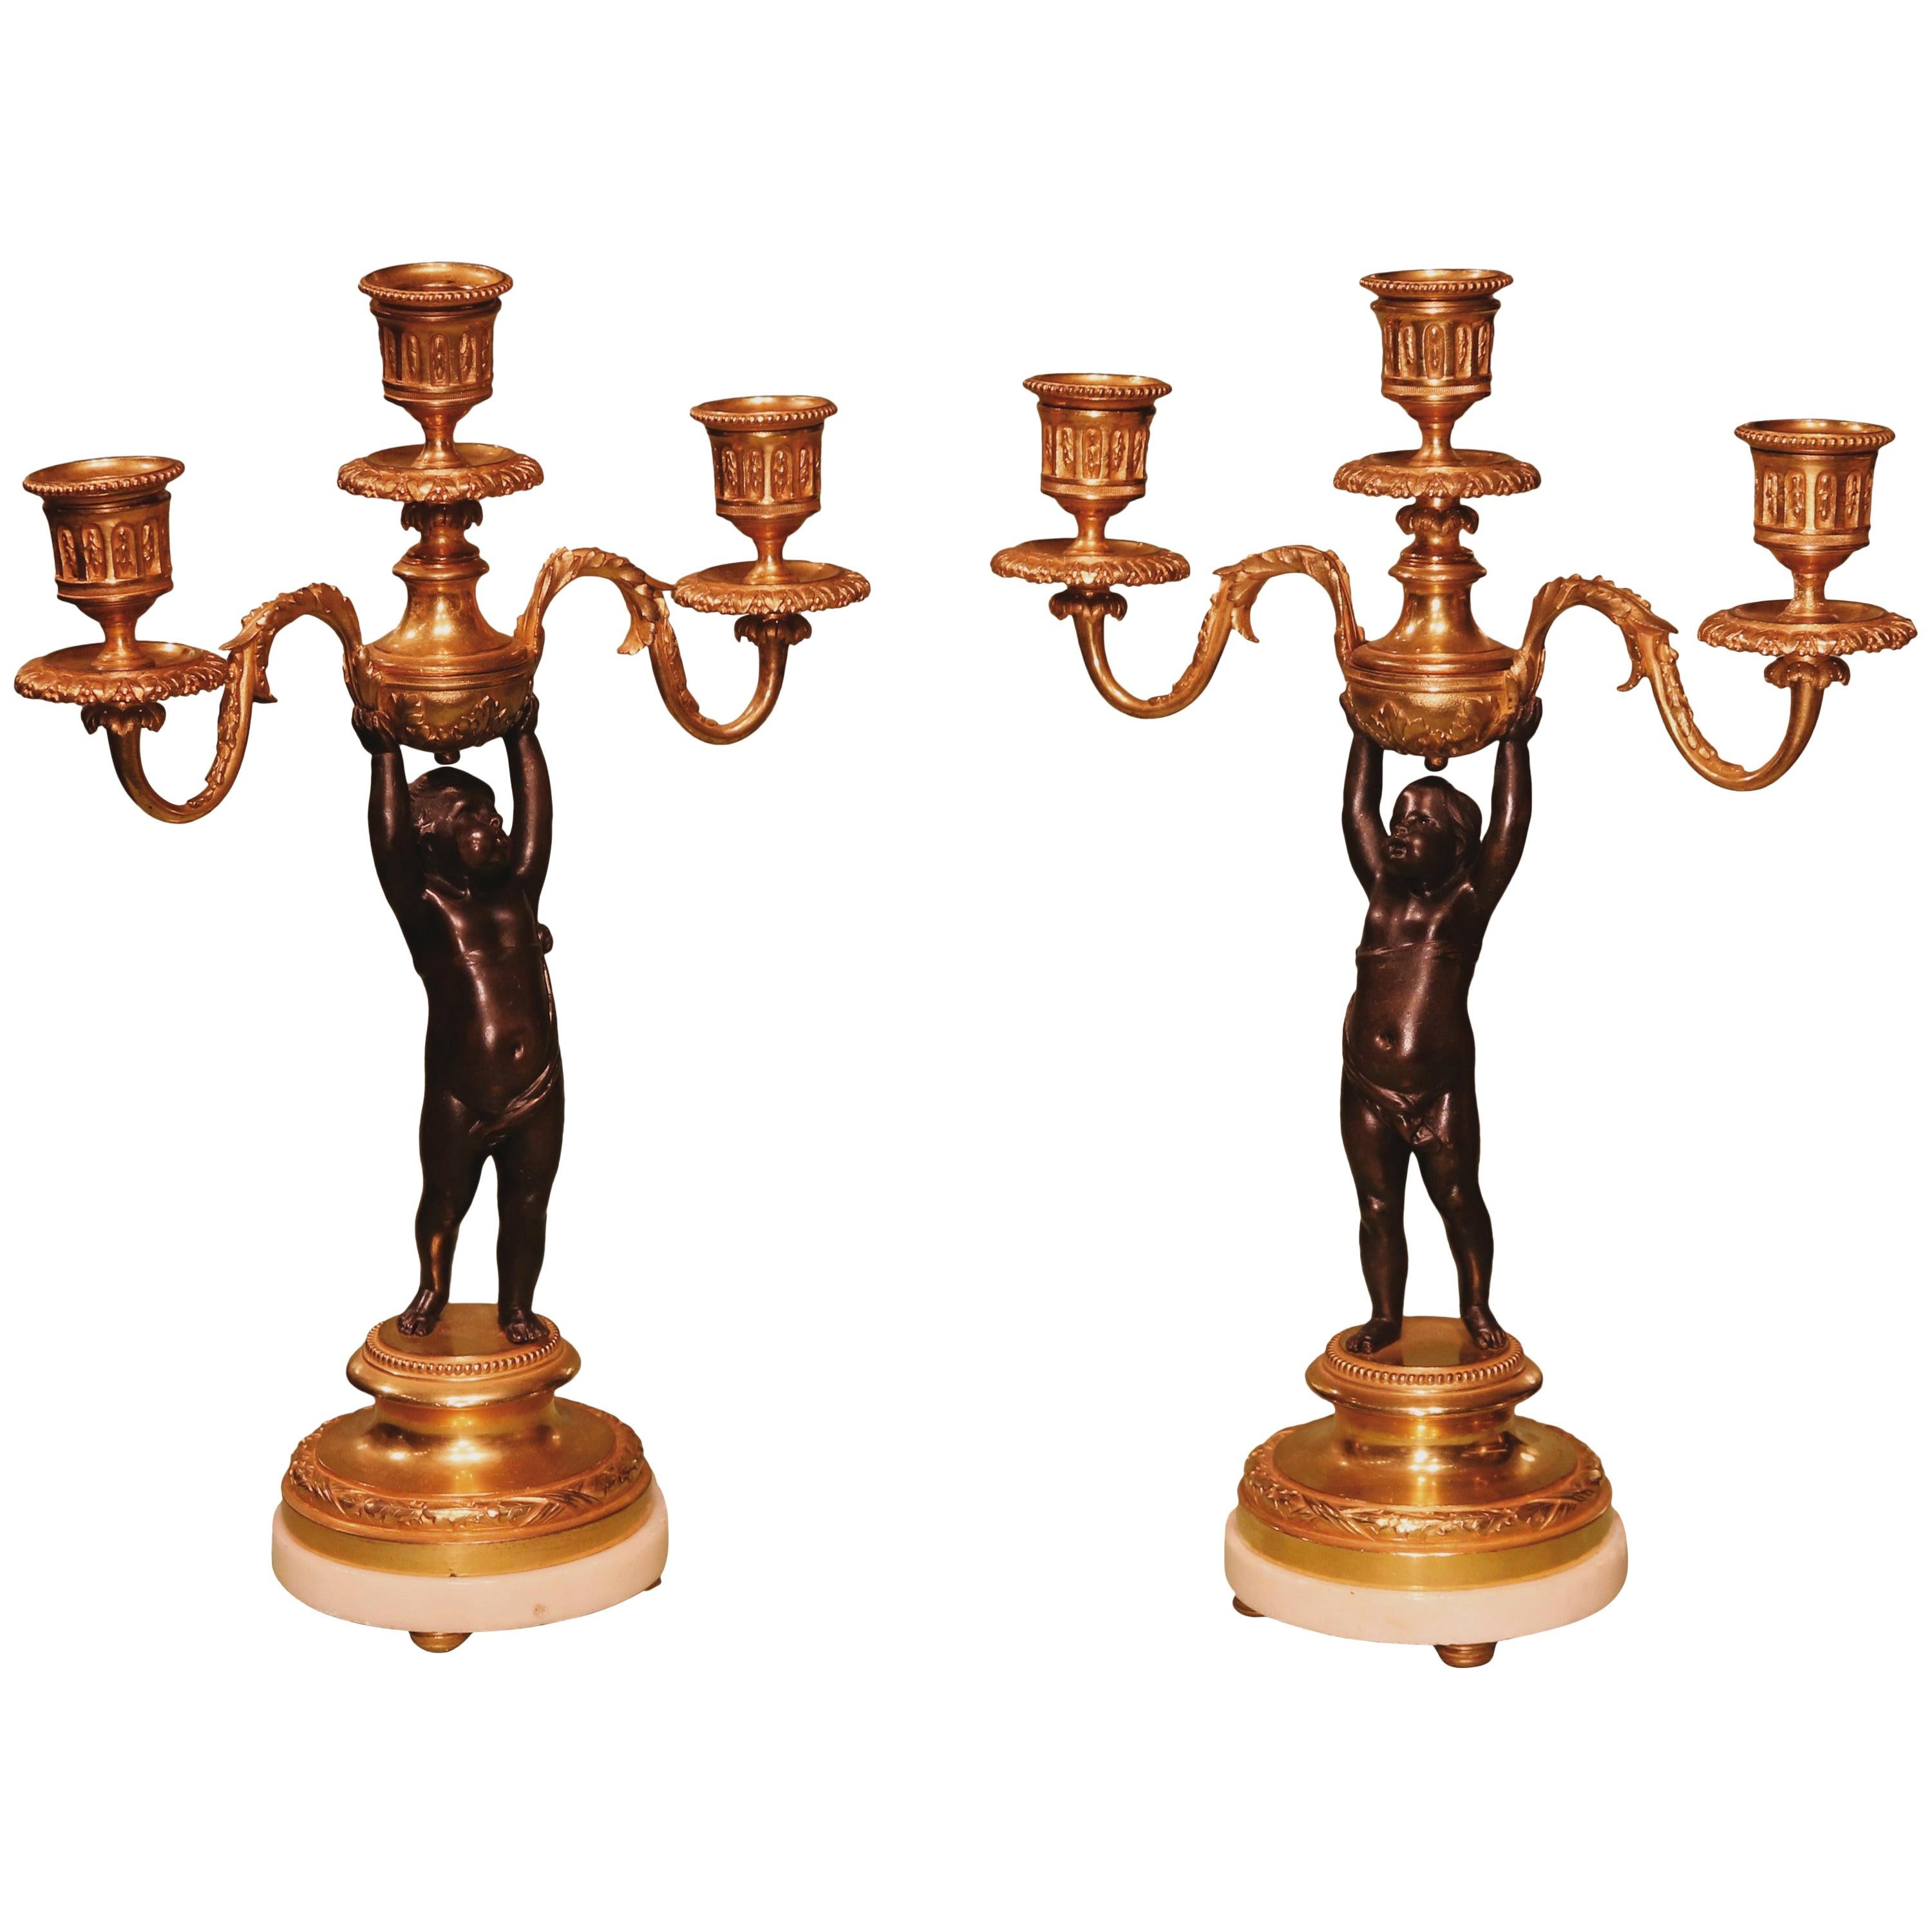 Paire de candélabres à trois lumières en bronze et bronze doré représentant des chérubins, XIXe siècle